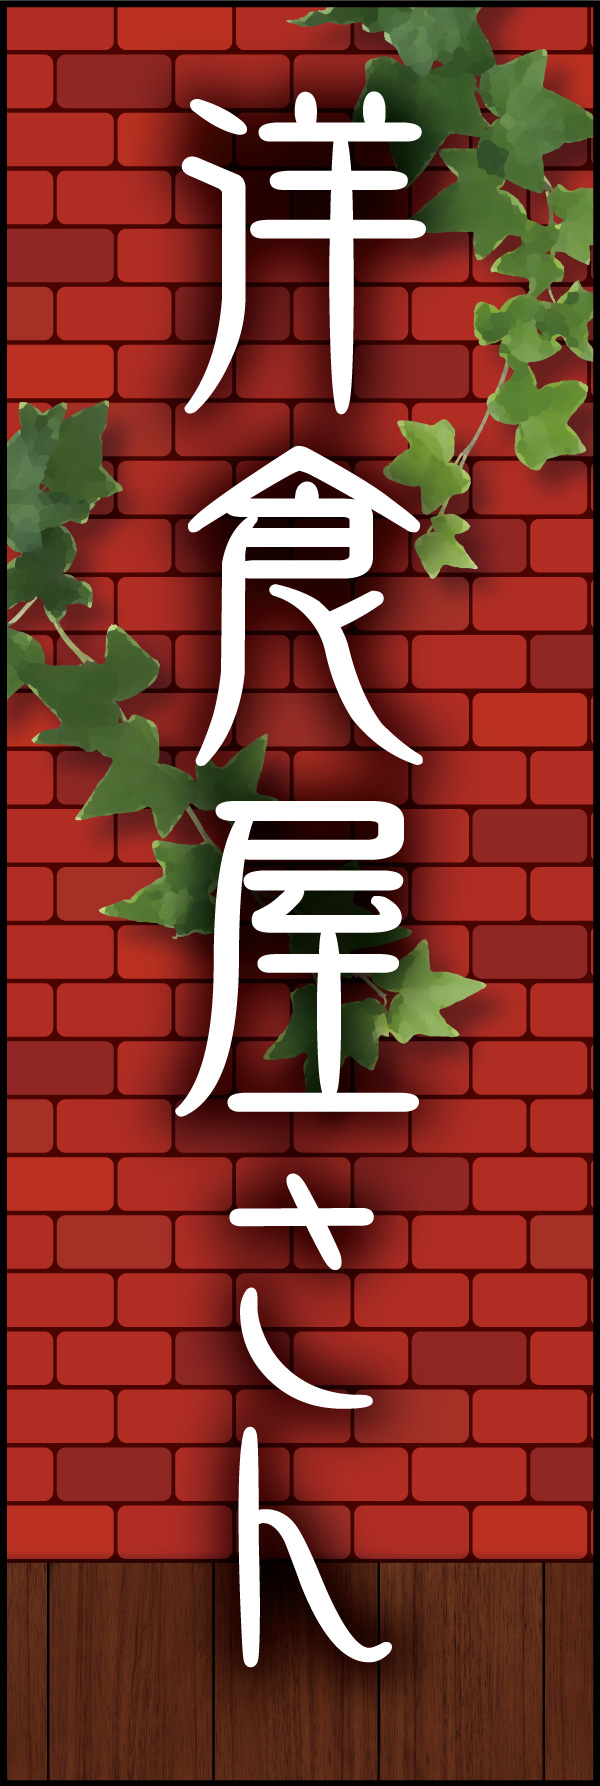 洋食屋さん 03 「洋食屋さん」の幟です。赤煉瓦をバックに、懐かしい洋食屋さんをイメージしてデザインしました。(Y.M)